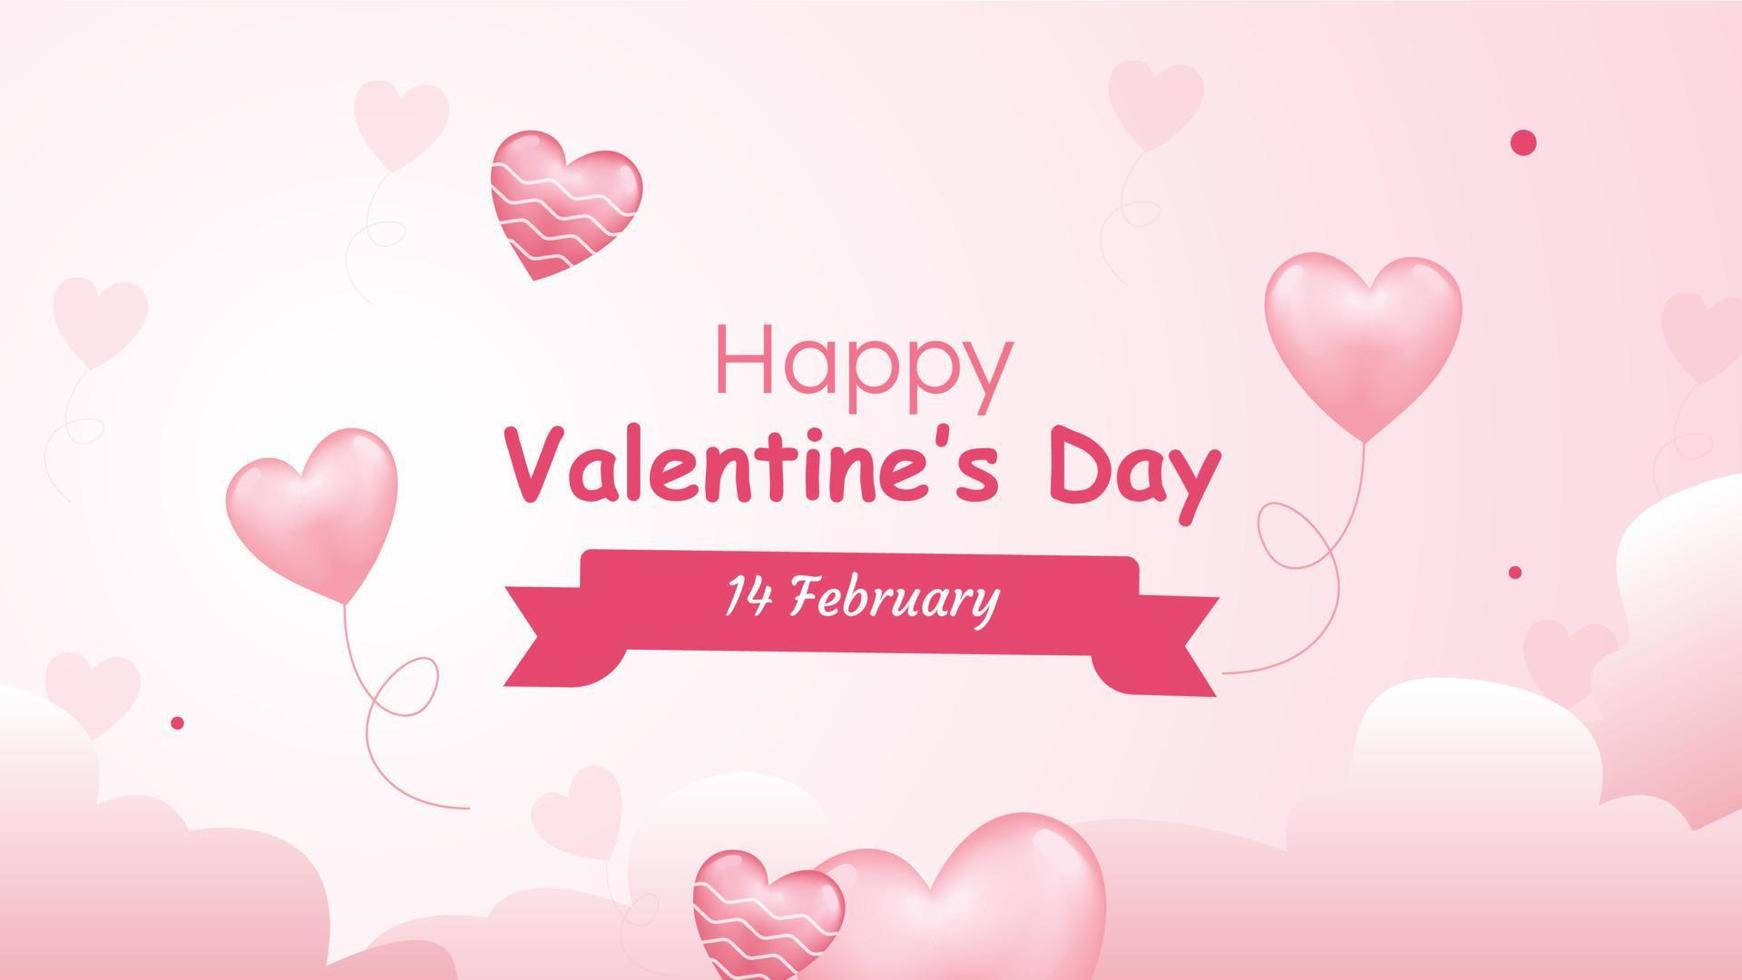 met deze lief kaart, u mei vieren liefde Aan Valentijnsdag dag. zijn de ideaal nadering naar uitdrukken liefde omdat het heeft een roze liefde hart ballon, pluizig wolken, en een gepassioneerd backdrop vector